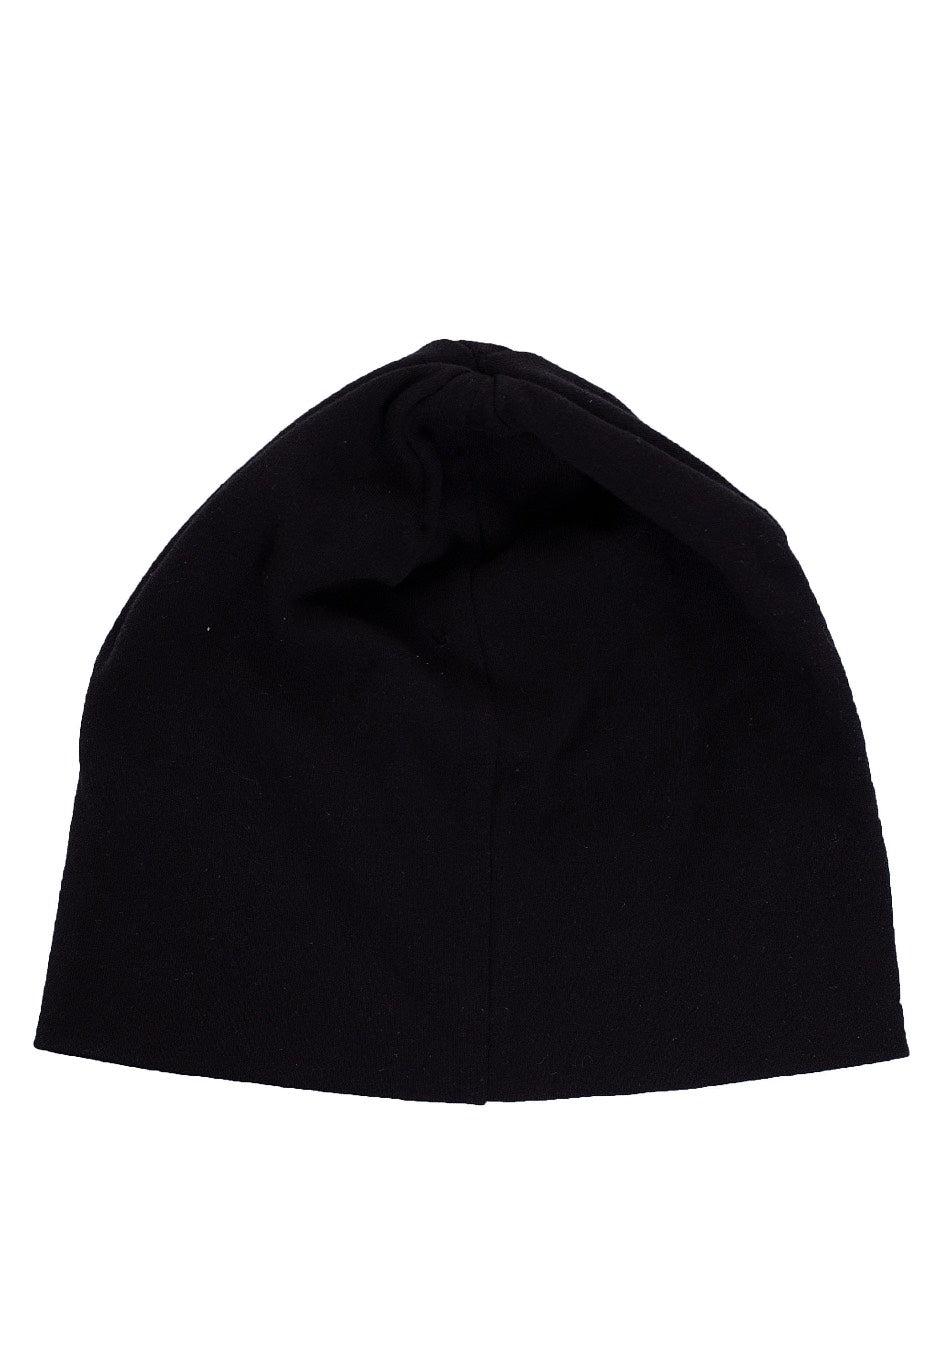 Flexfit - Premium 210 Fitted Black - Cap